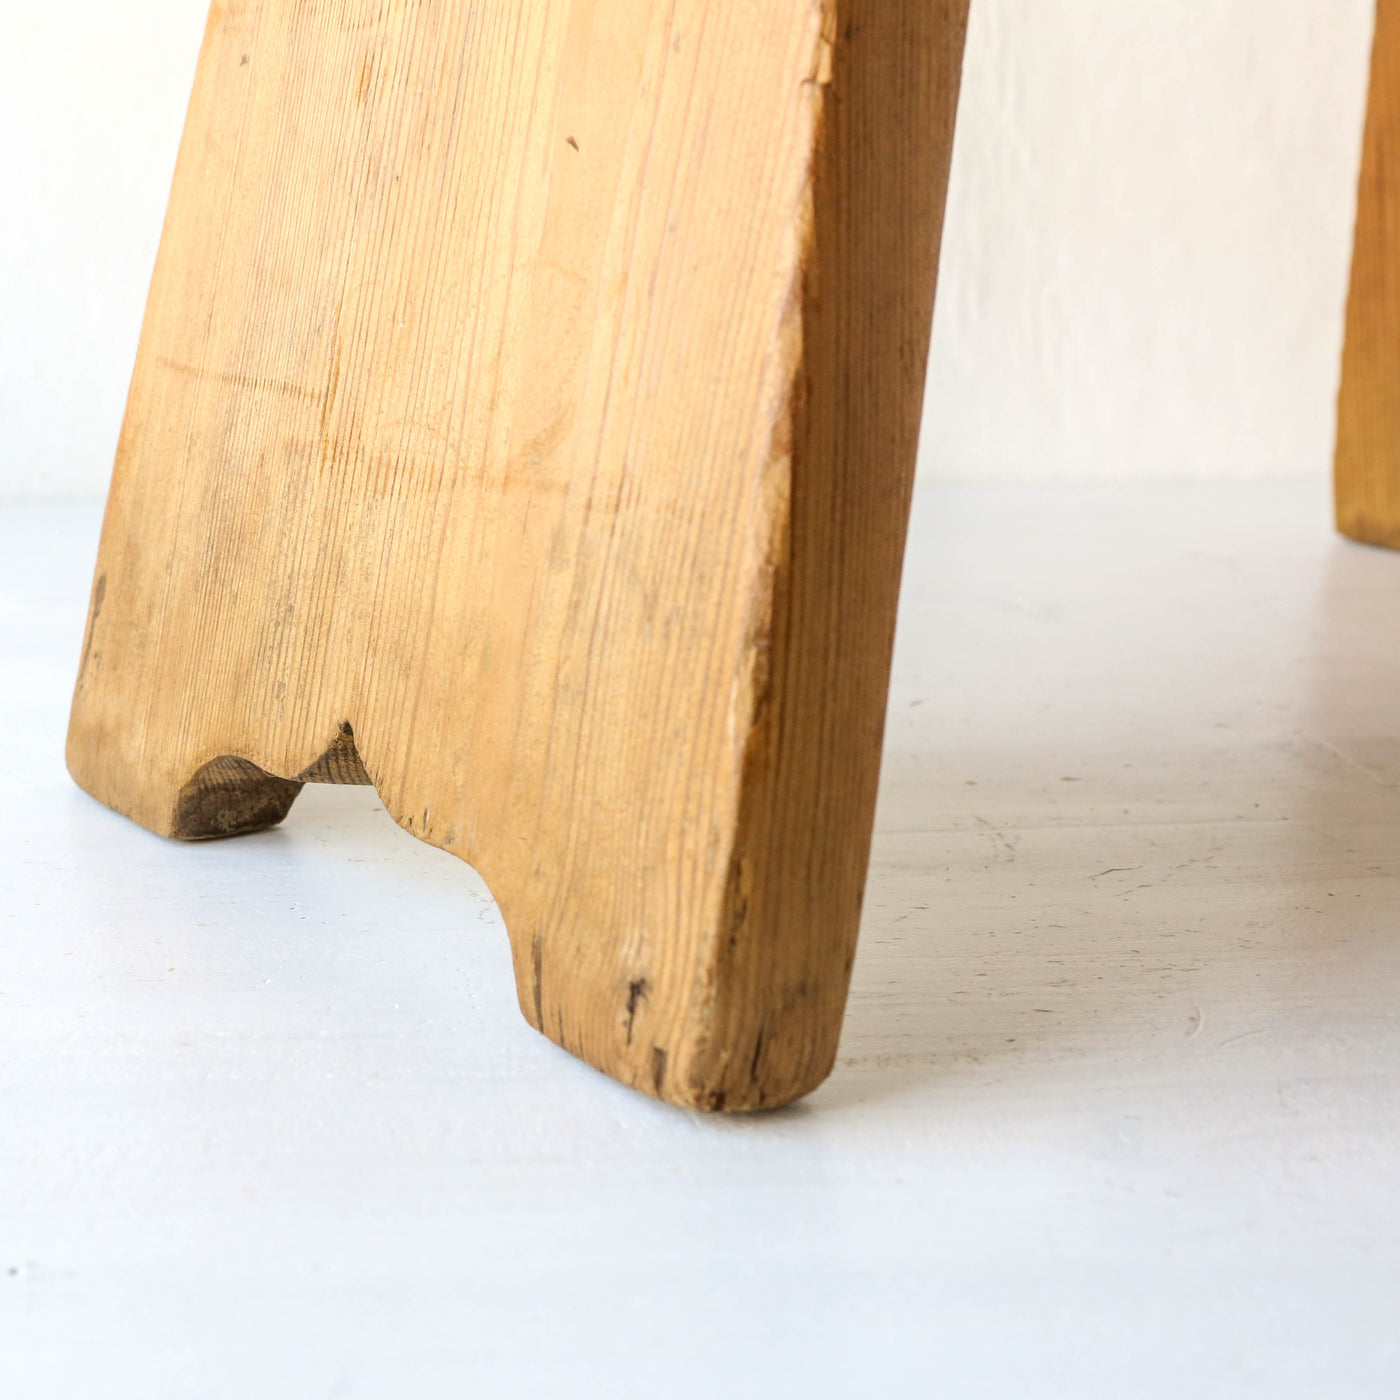 Vintage Foot Stool - Design 2 - Rustic Pine